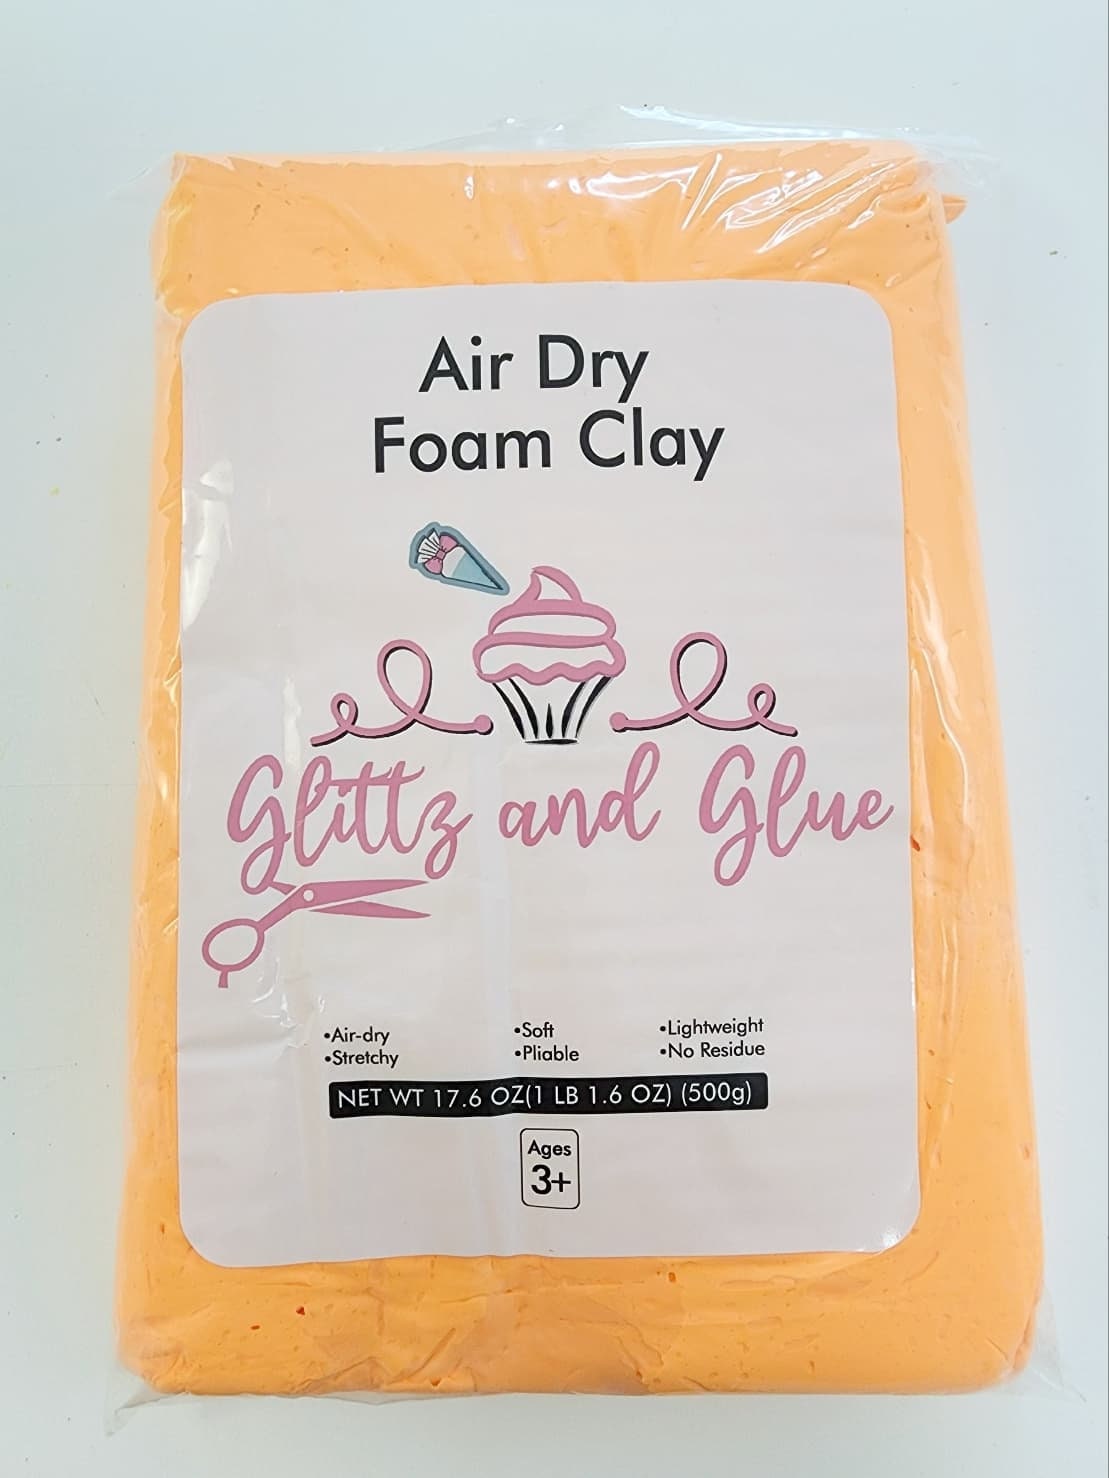 Air Dry Foam Clay, Foam Clay, Glittz and Glue Foam Clay, Cosplay, Fake Bake  Supplies, Air dry clay, light weight air dry clay, Clay Slime